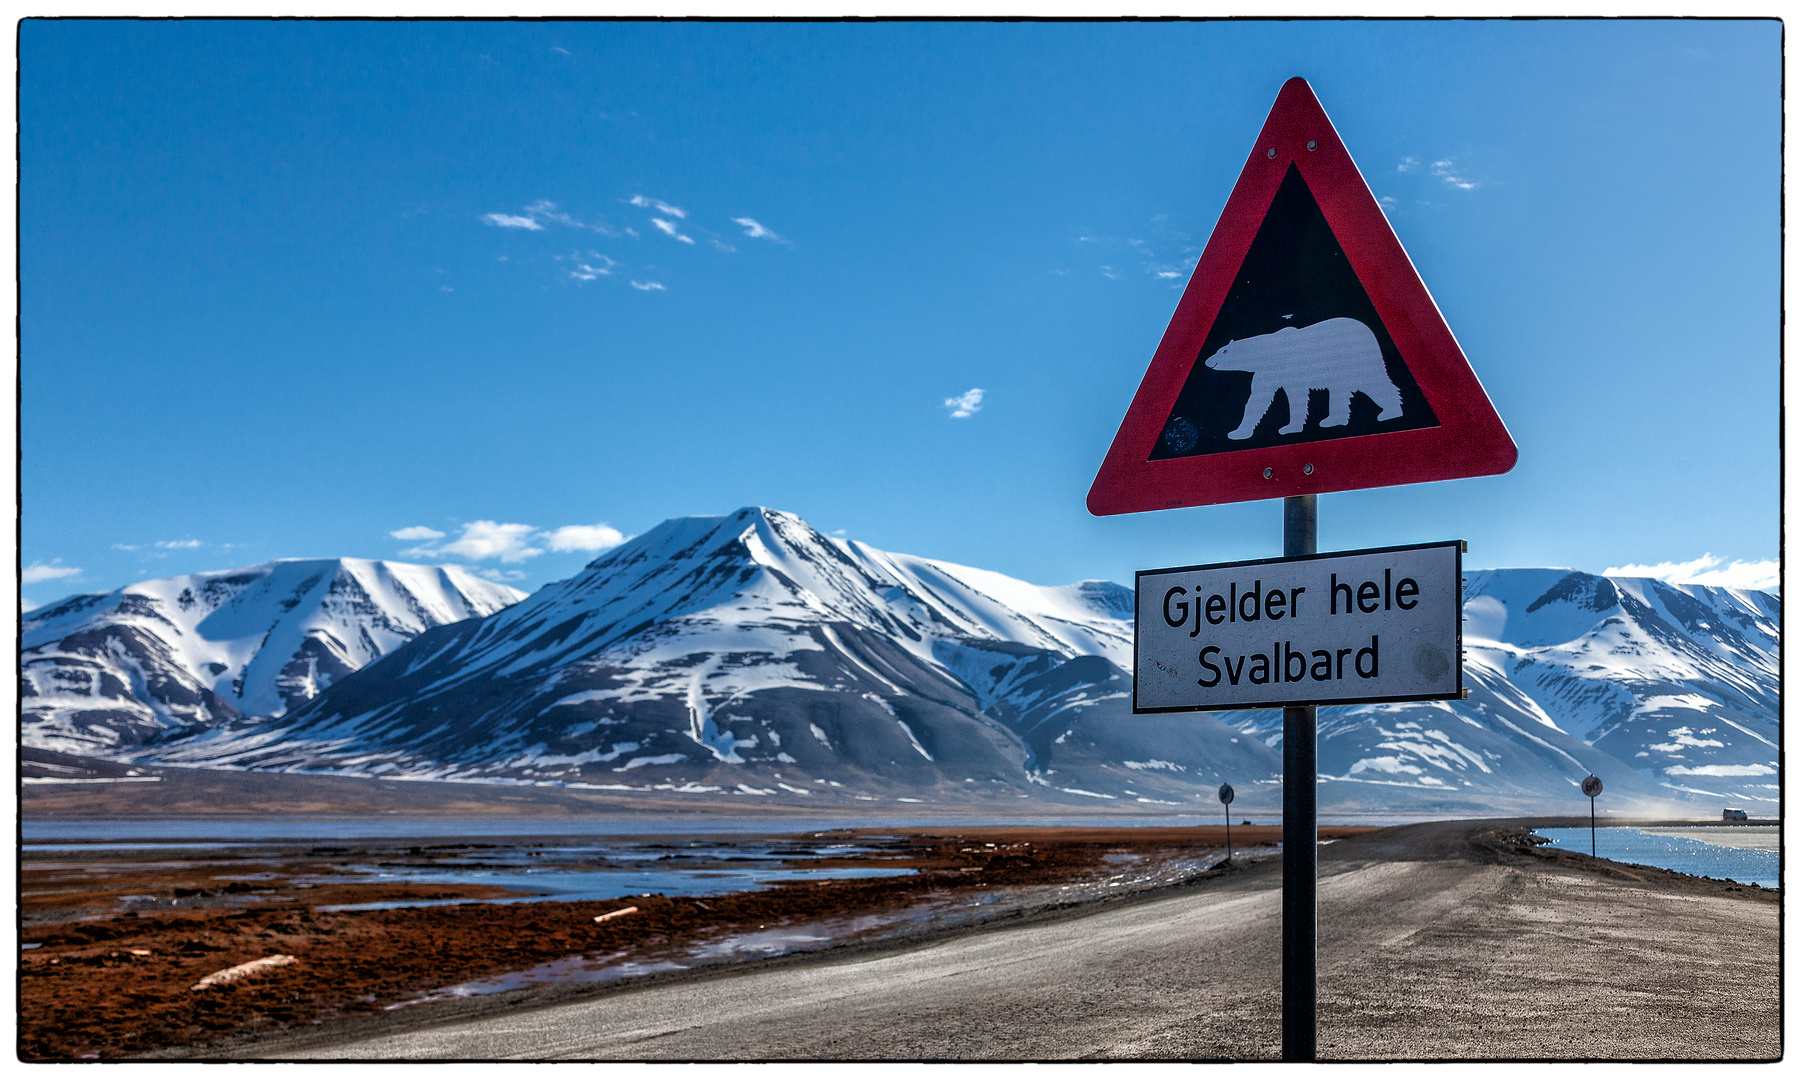 Gjelder hele Svalbard